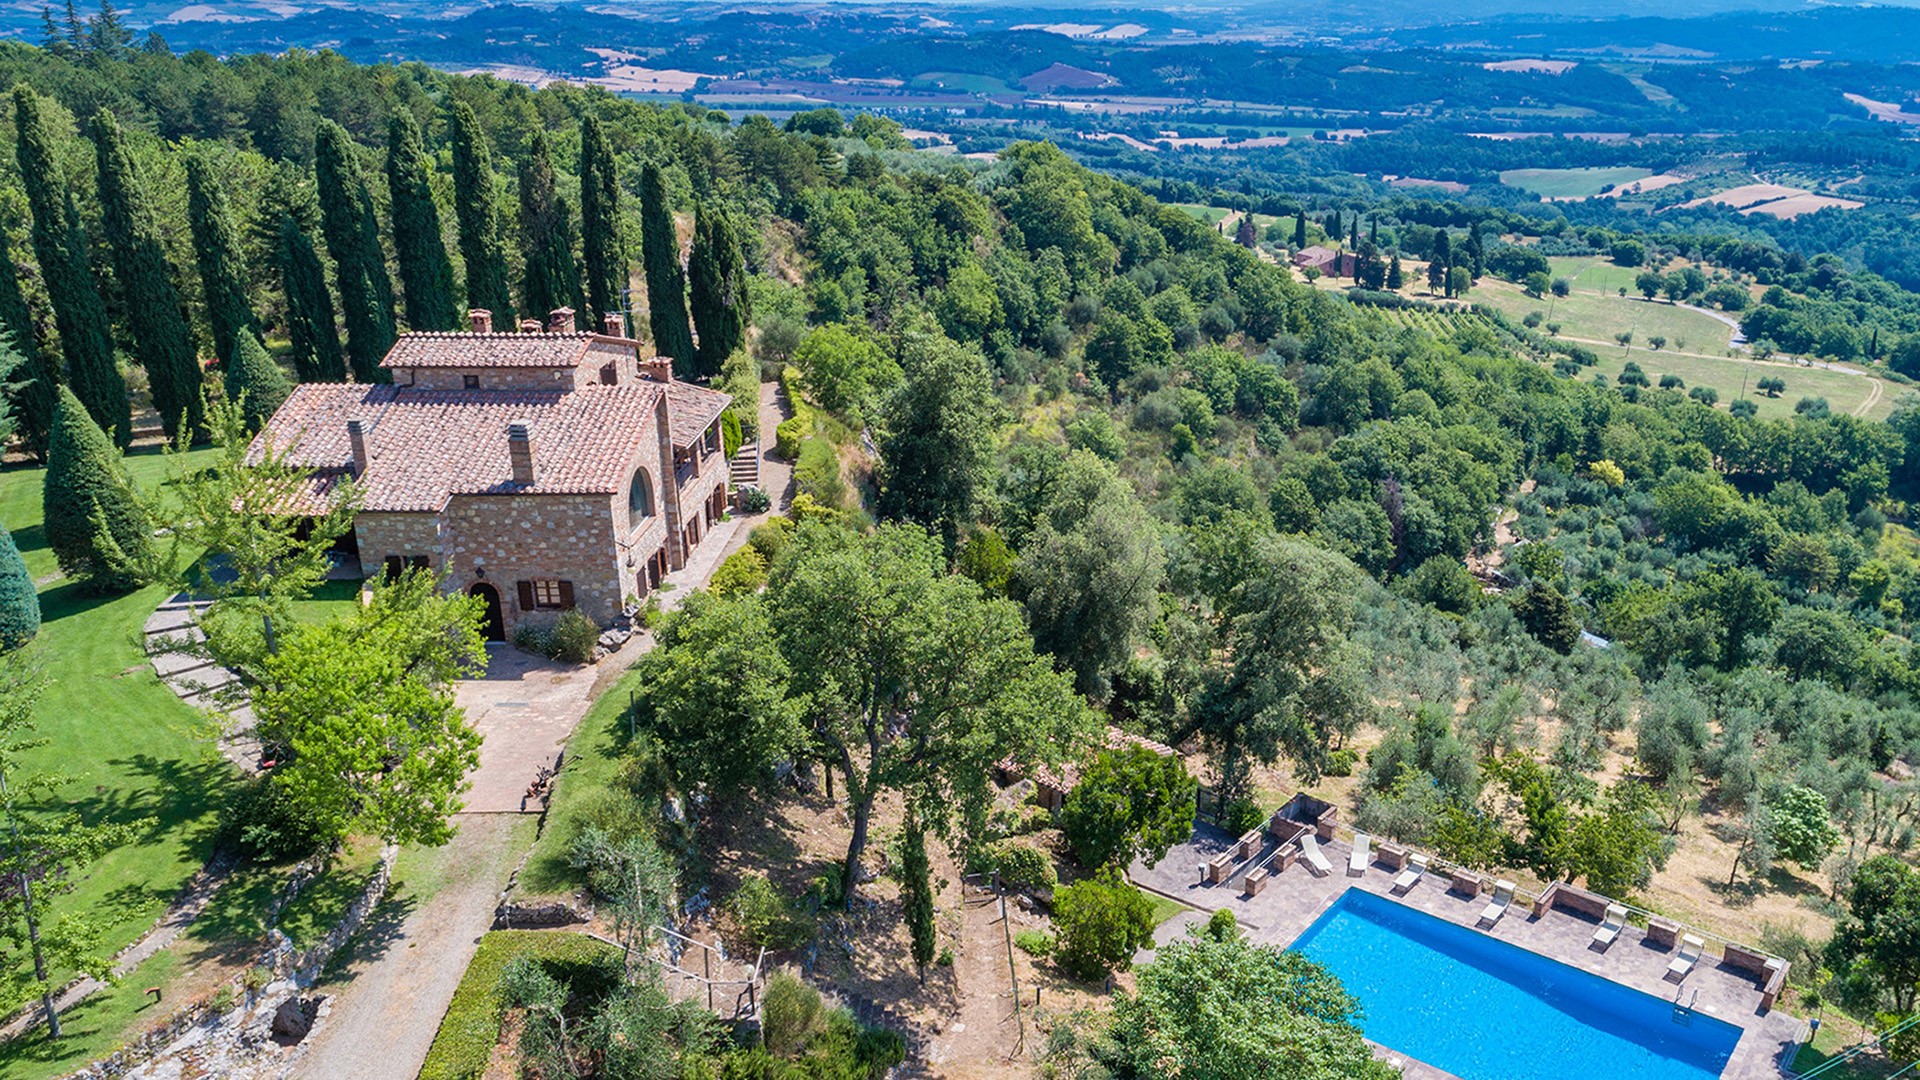 Villa piscina affitto uso esclusivo Toscana Sarteano Valdorcia Valdichiana